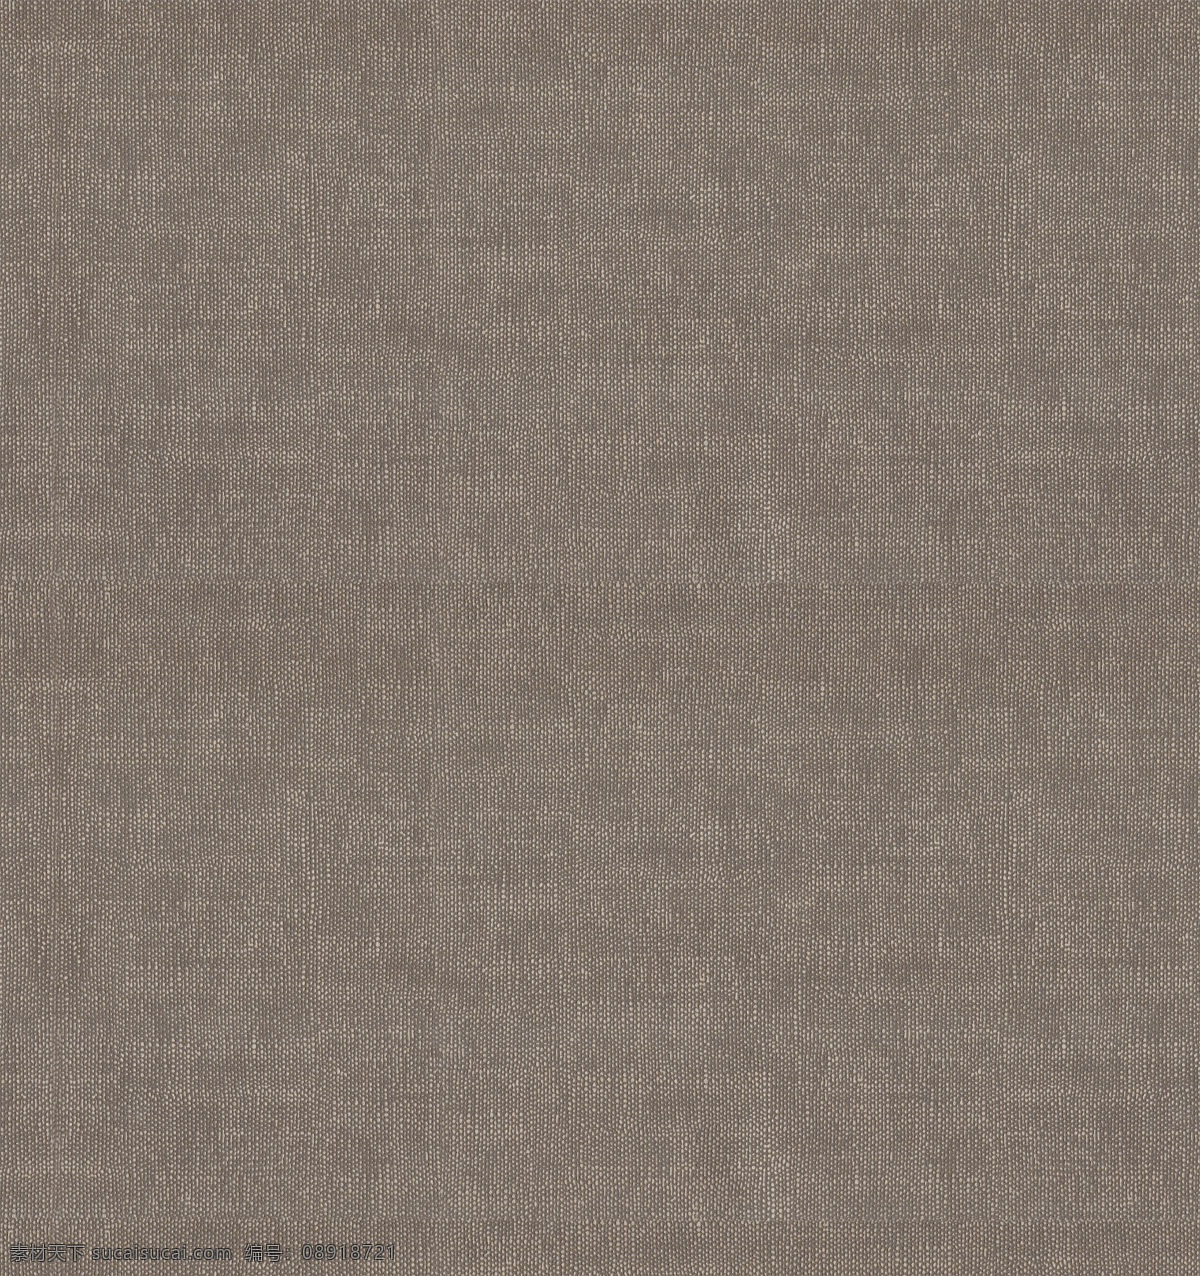 vray 地毯 材质 布料 米色 有贴图 max2008 3d模型素材 材质贴图